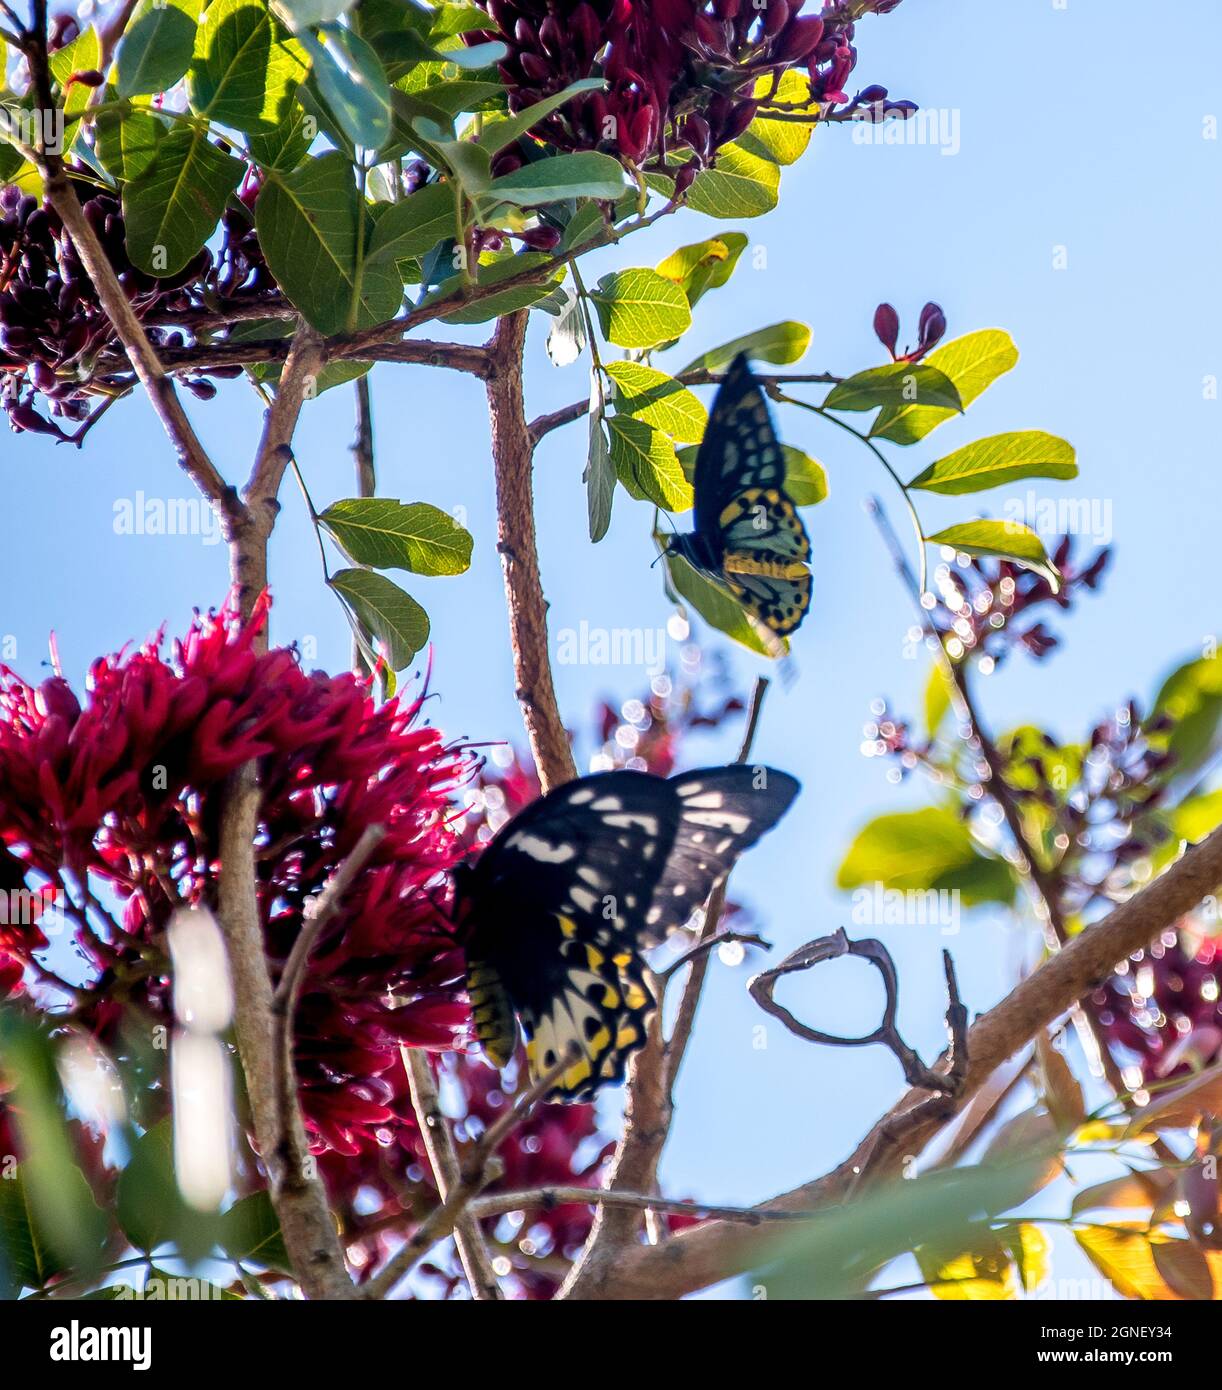 Männliche und weibliche geschützte Richmond Birdwing Schmetterlinge, Ornithoptera richmondia, in einem Baum mit roter Blüte. Tamborine Mountain, Queensland, Australien Stockfoto